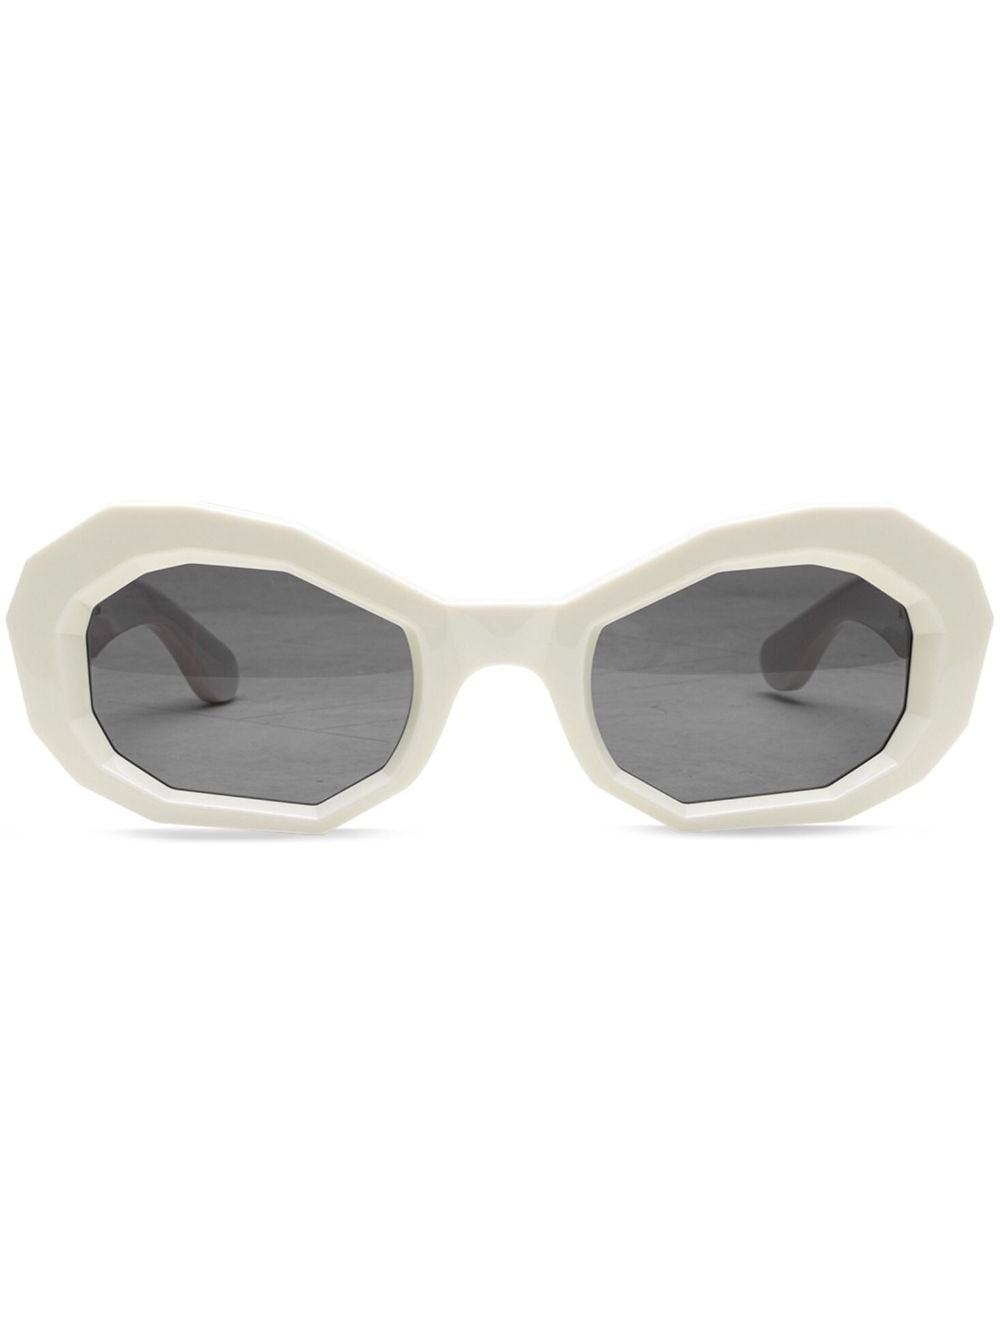 Honeycomb "White" sunglasses - 1